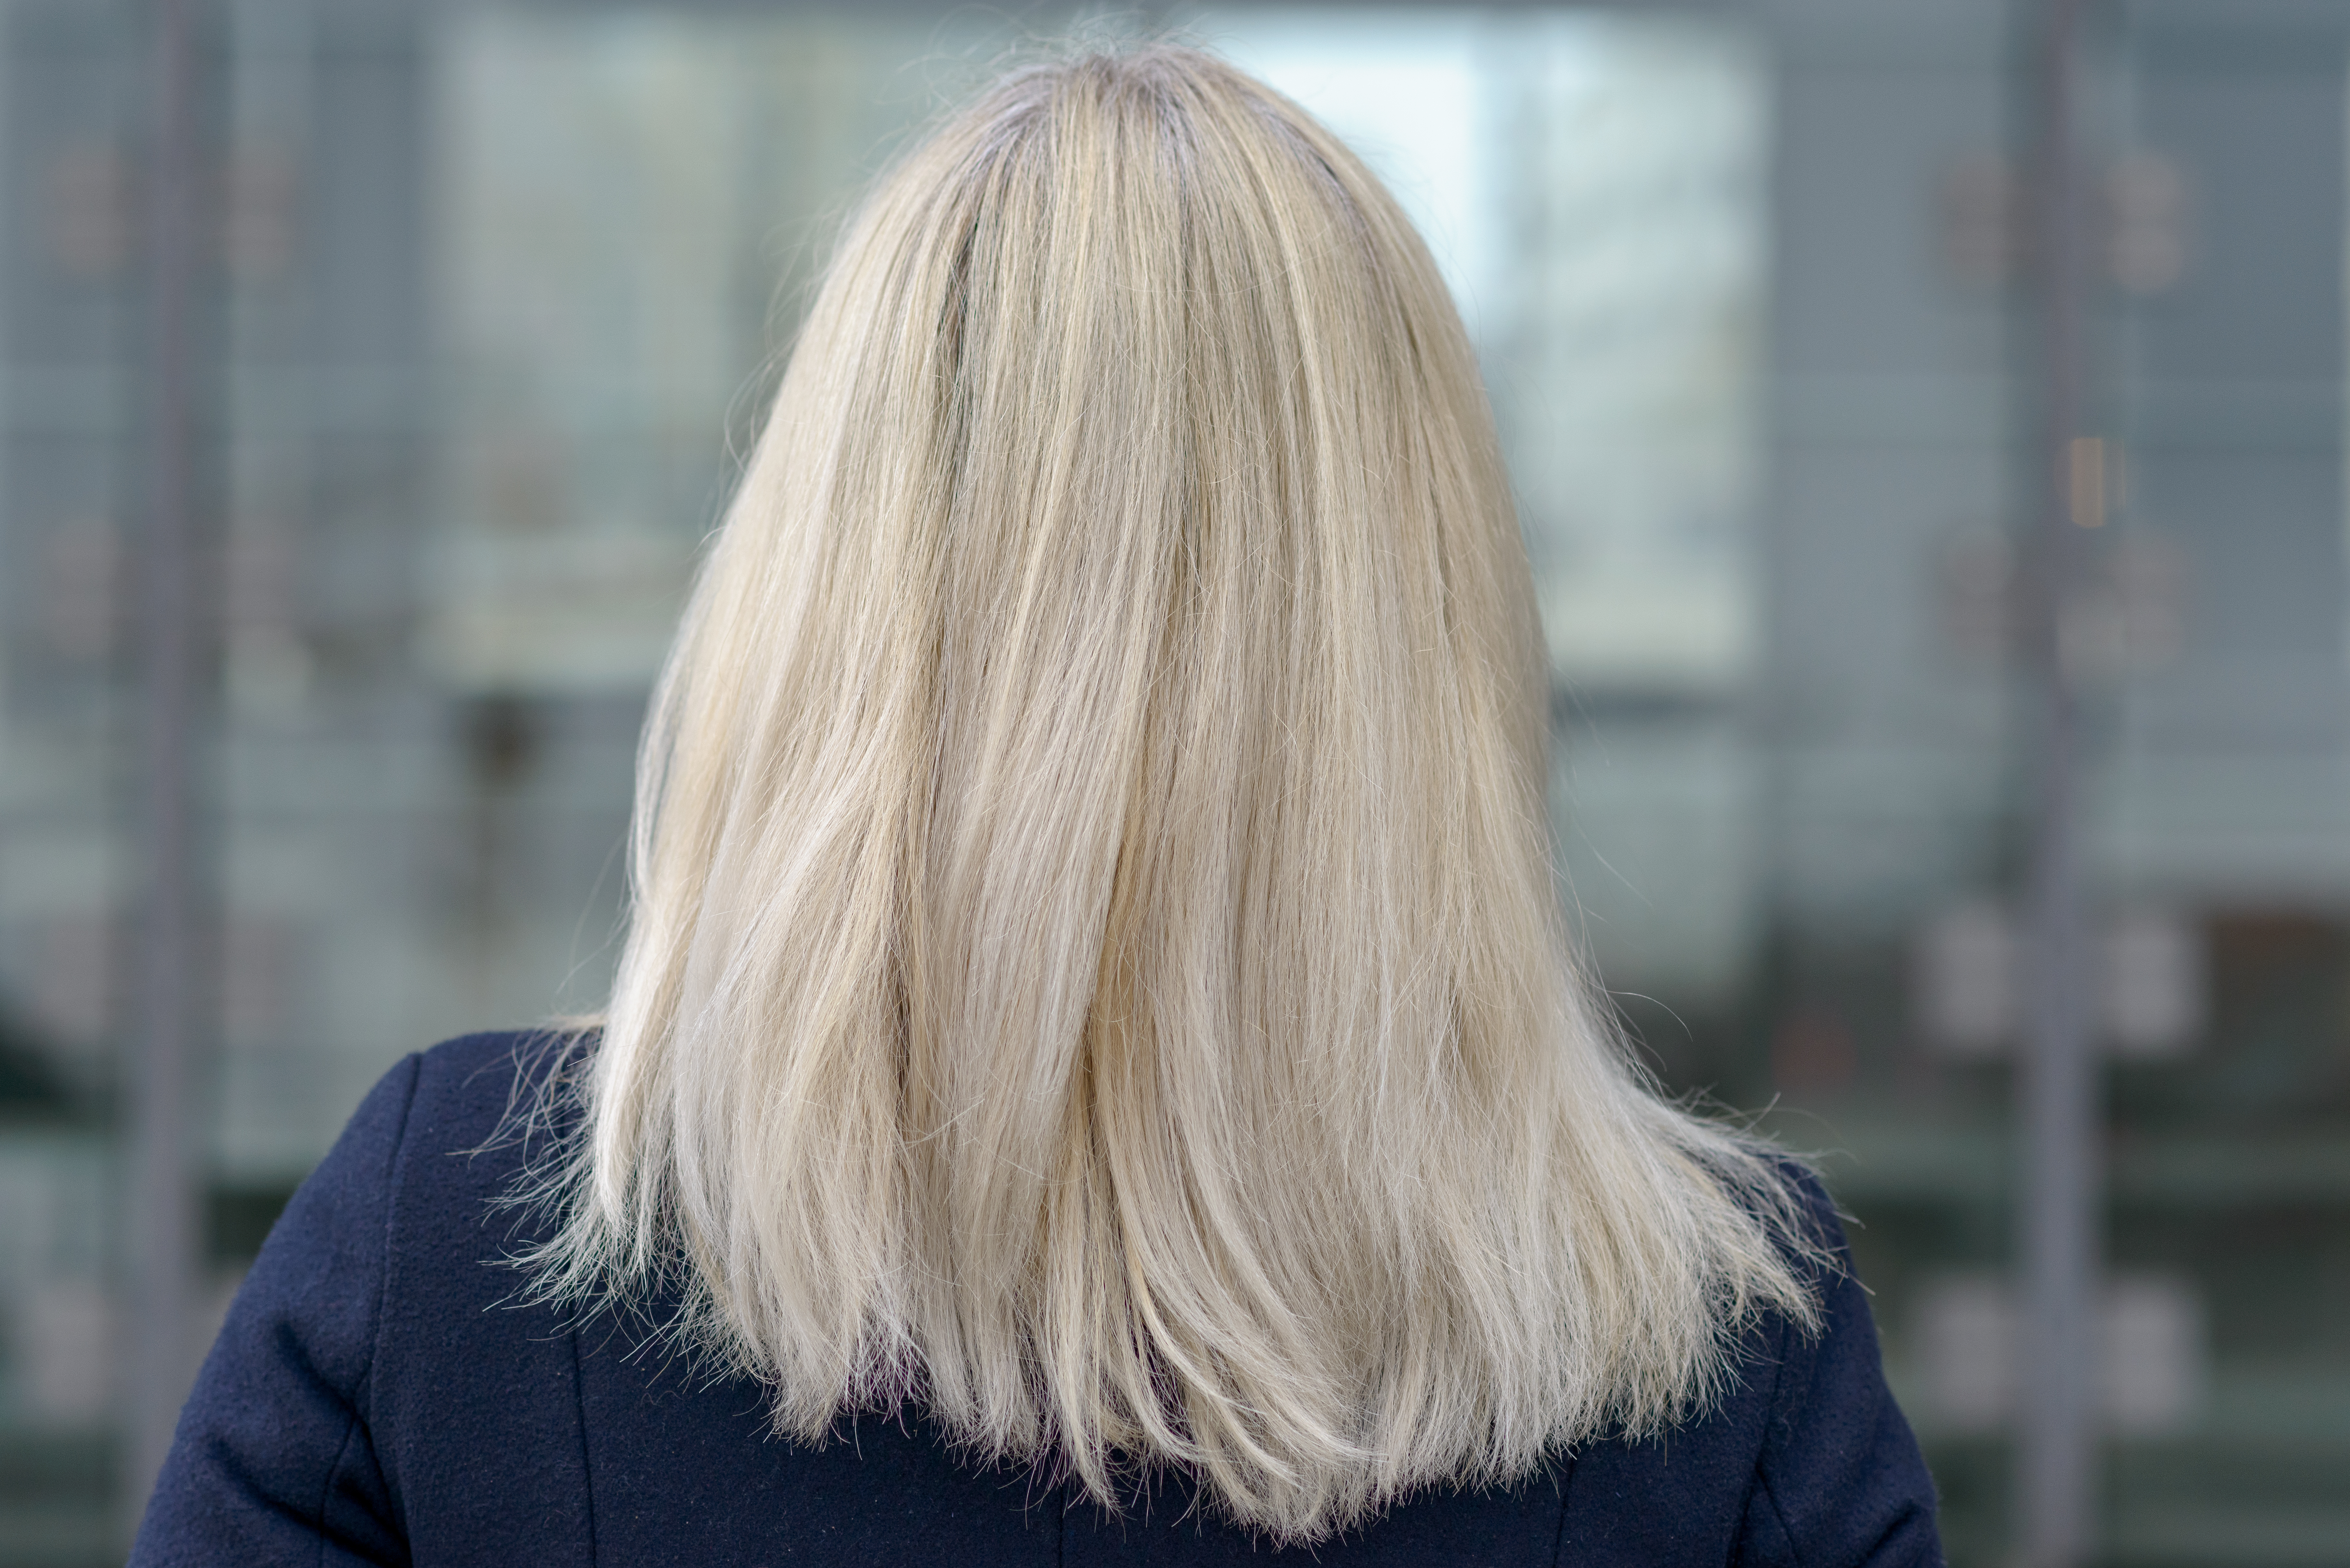 Vista trasera de una mujer con el pelo rubio hasta los hombros | Foto: Shutterstock